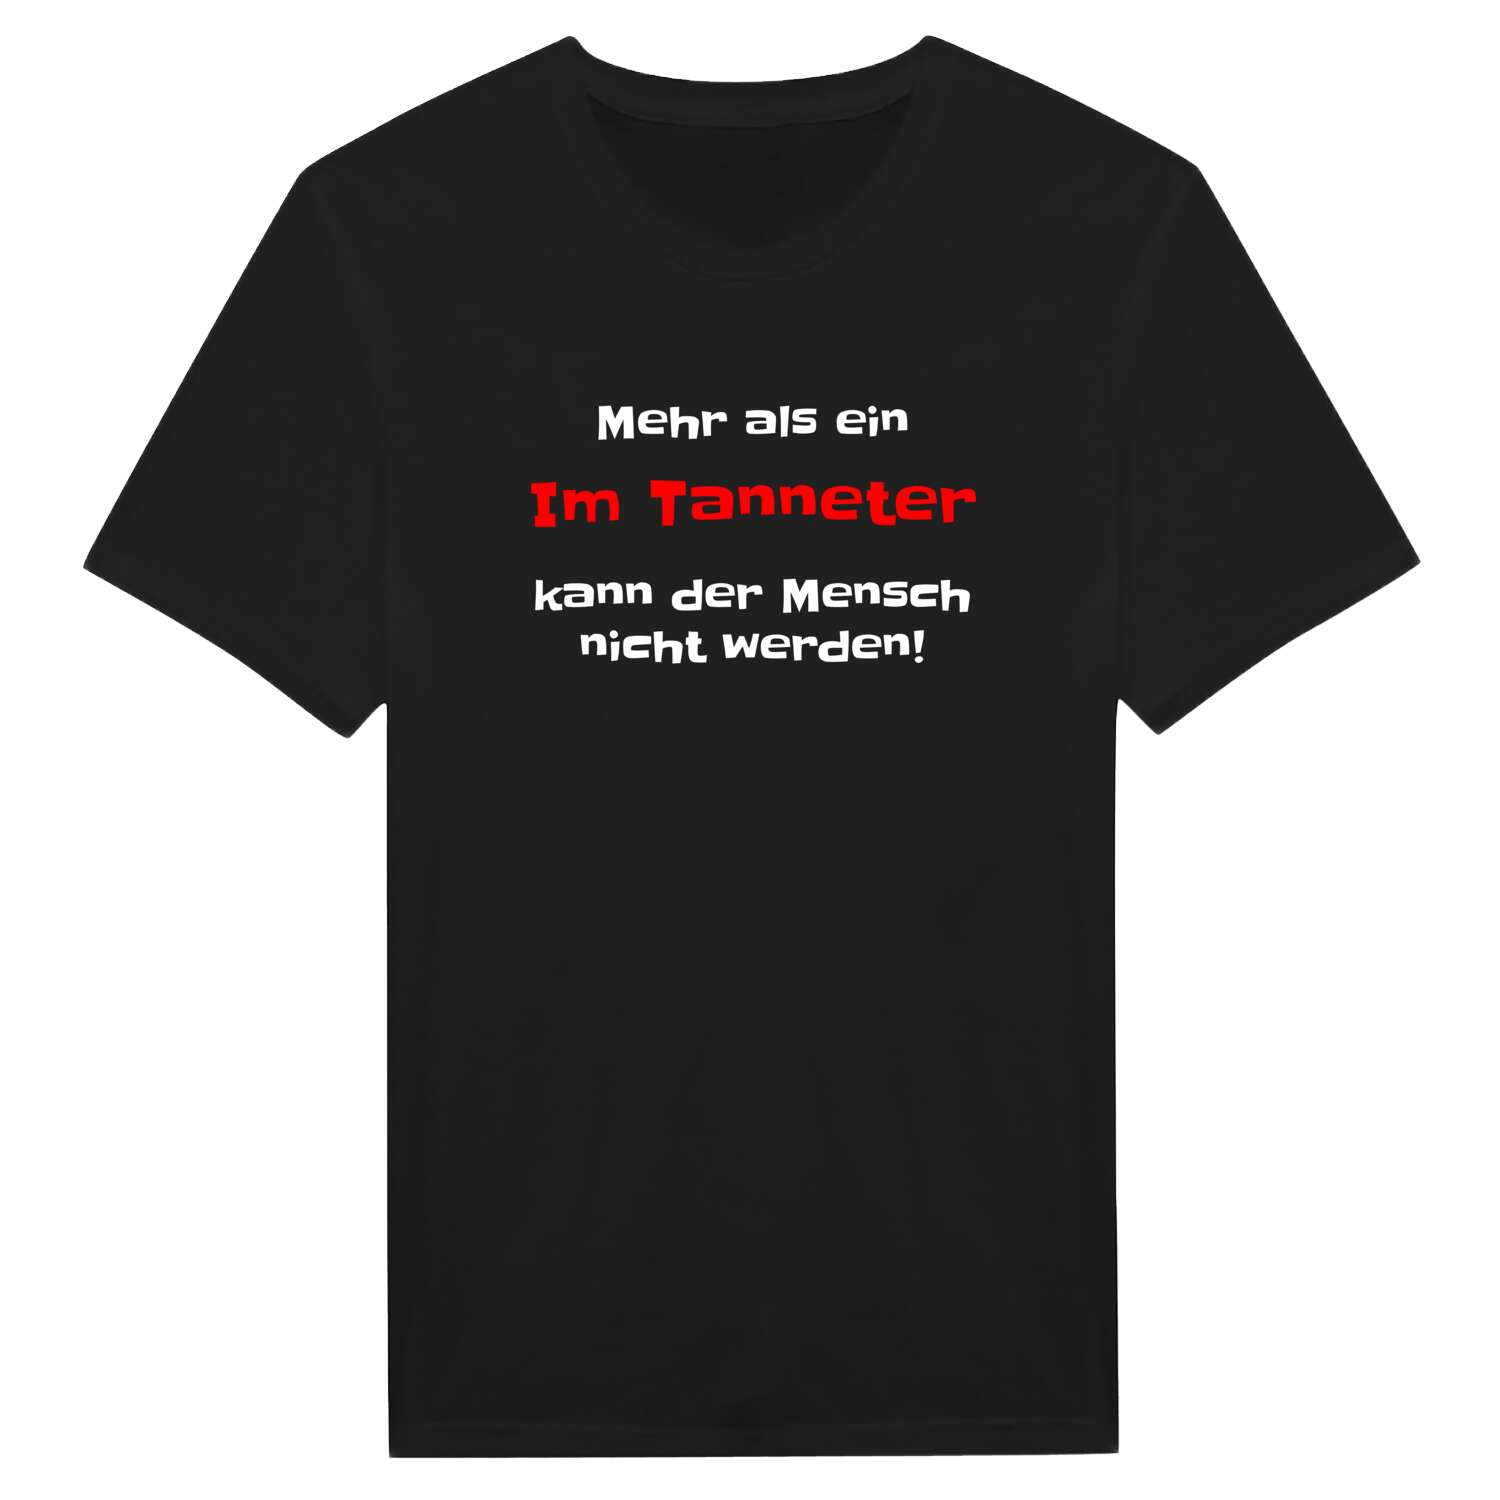 Im Tannet T-Shirt »Mehr als ein«